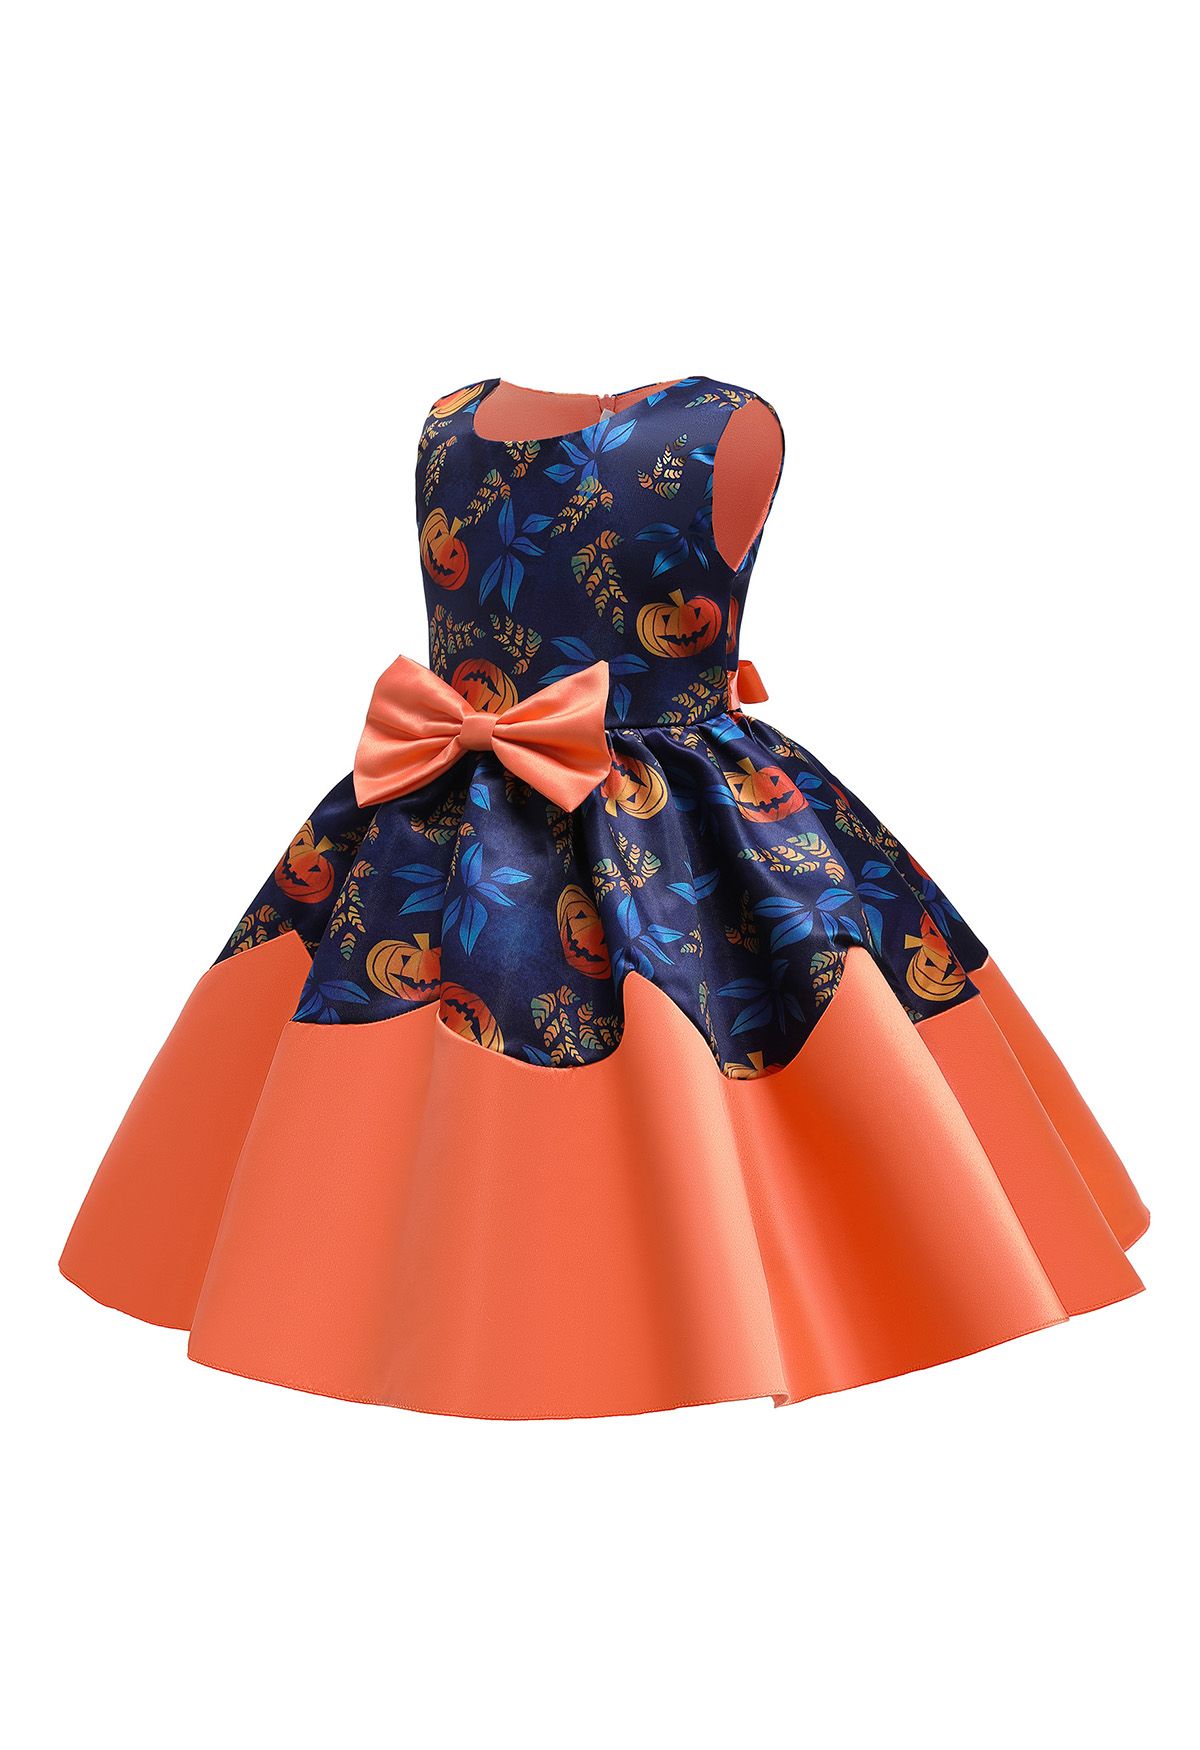 Pumpkin Lantern Bowknot Plissiertes Prinzessinnenkleid für Kinder